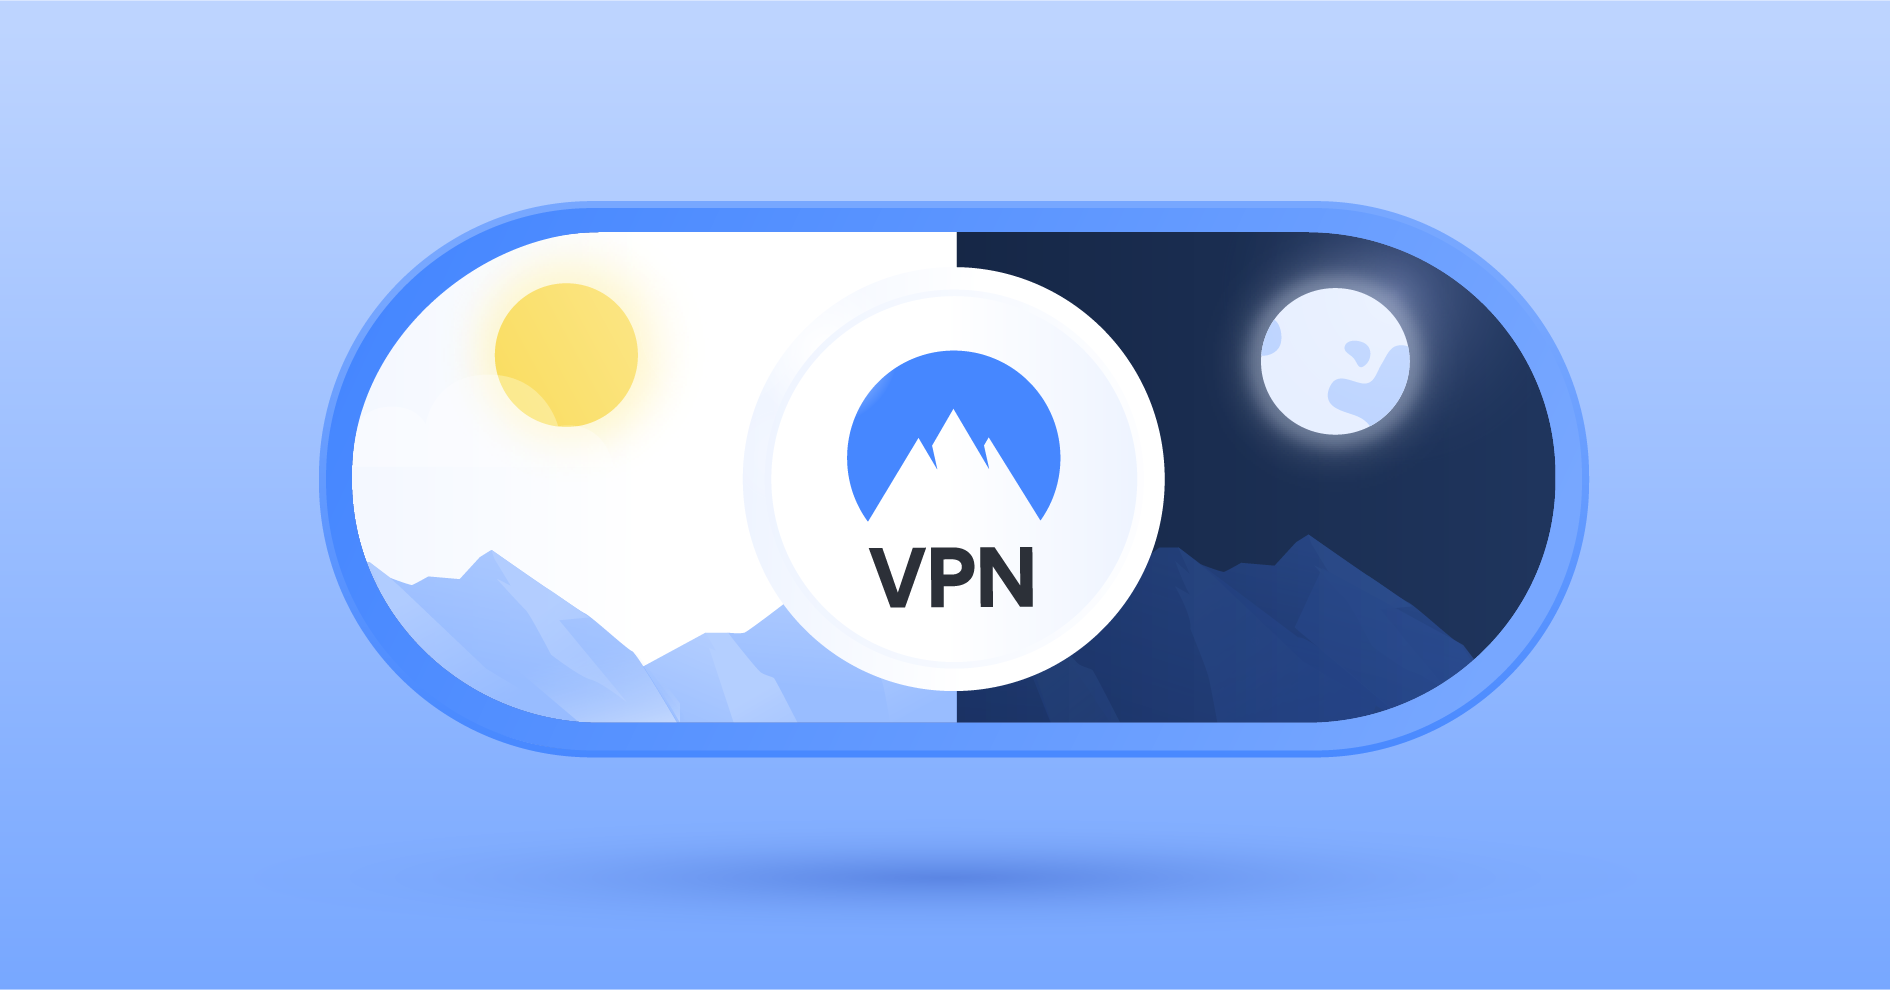 Should I leave Google VPN on all the time?